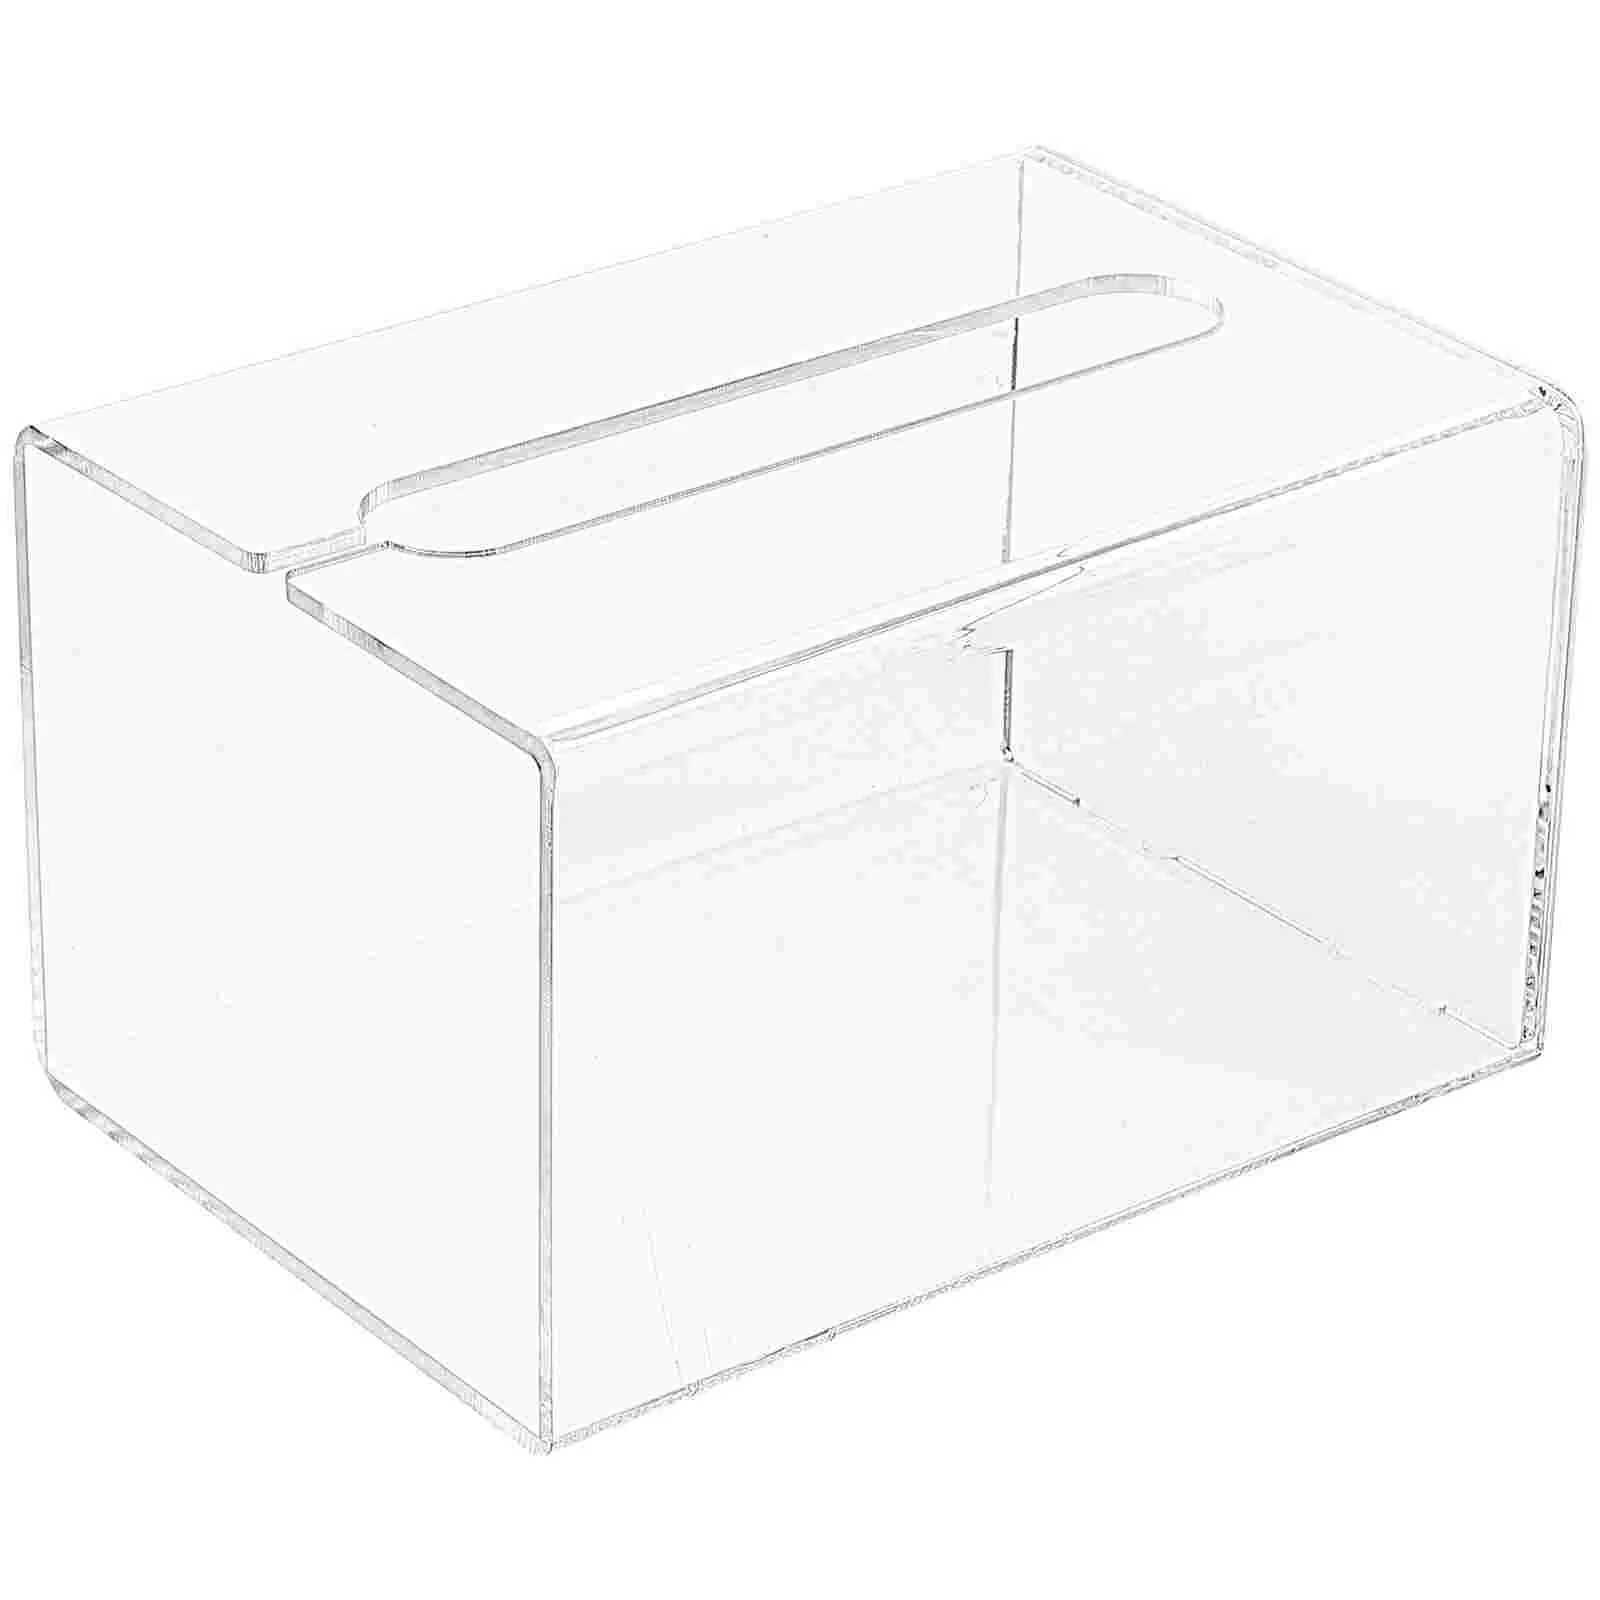 

Настенный бумажный ящик, держатель для салфеток, без перфорации, автомобильное полотенце, салфетка, монтируемый в минималистическом стиле контейнер